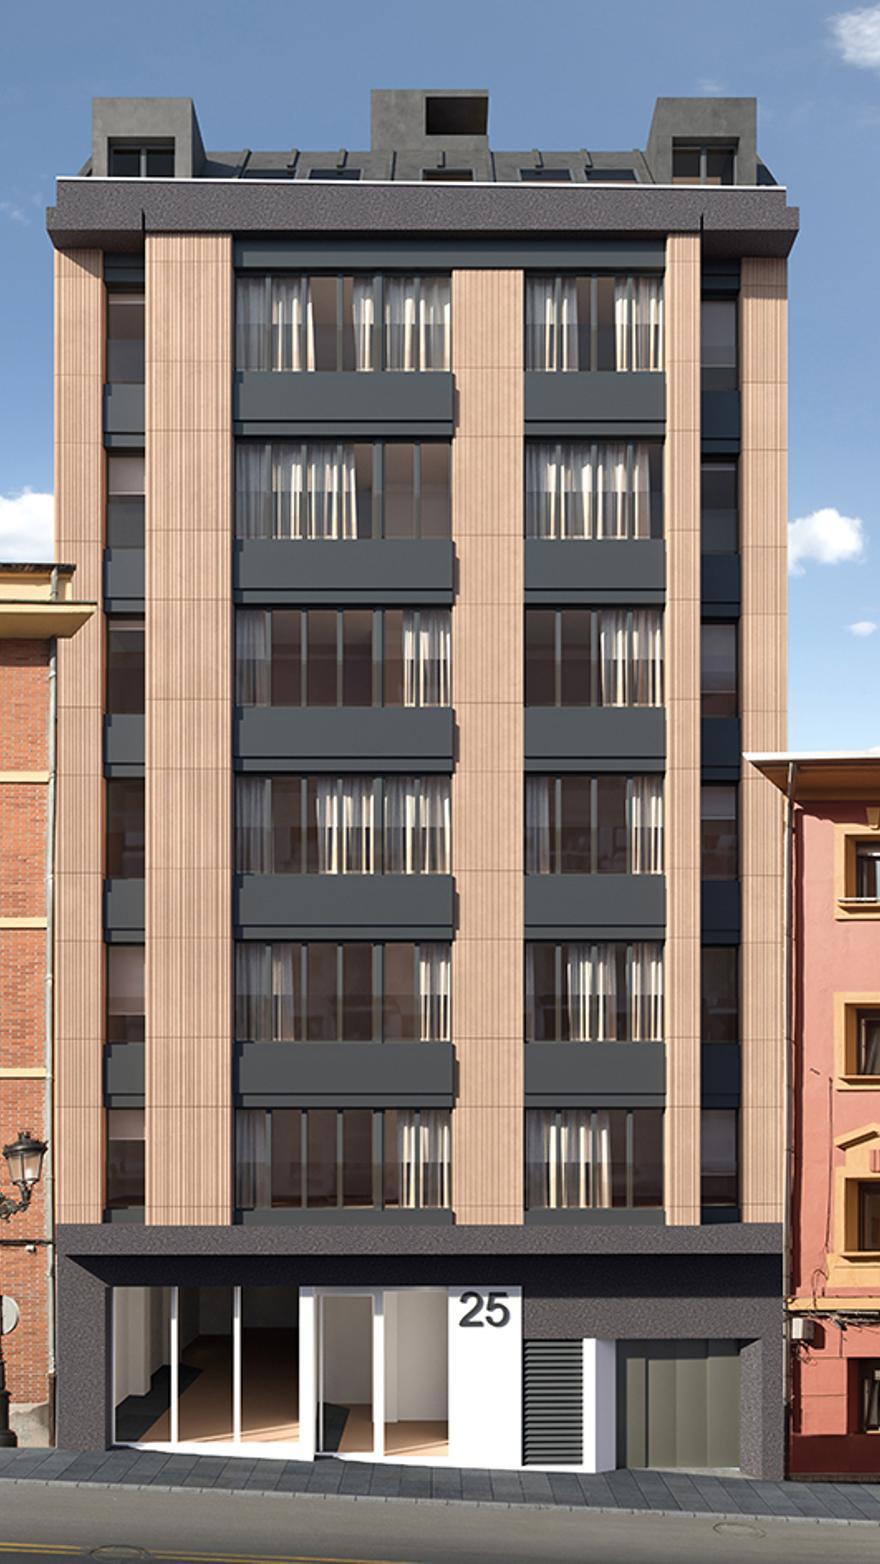 Oportunidad inmobiliaria en Oviedo: pisos y áticos a 10 minutos de Uría  desde 151.855 euros - La Nueva España